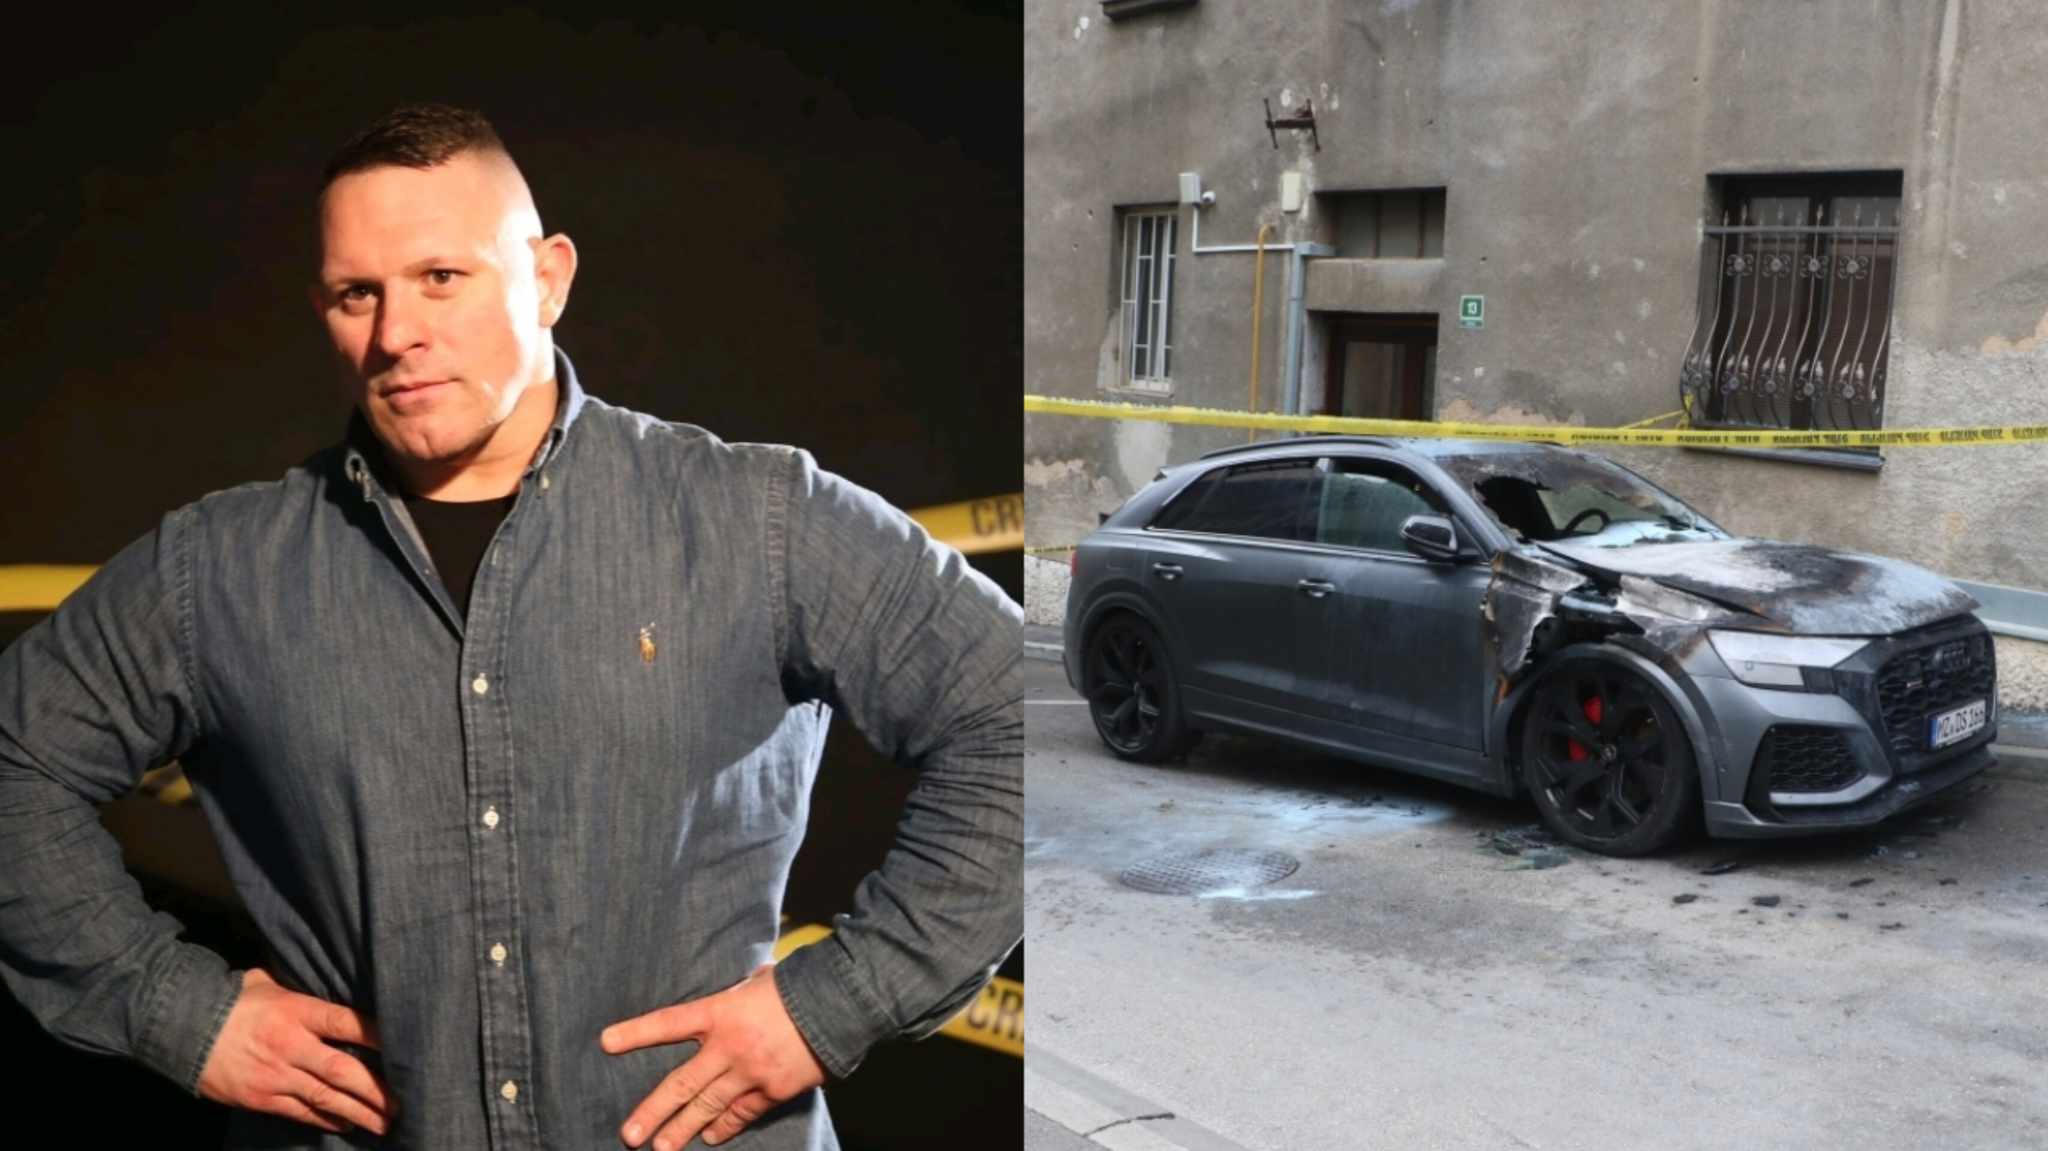 Zvanično: Denisu Stojniću neko namjerno zapalio skupocjeni automobil marke  Audi RSQ8 | Crna hronika BiH